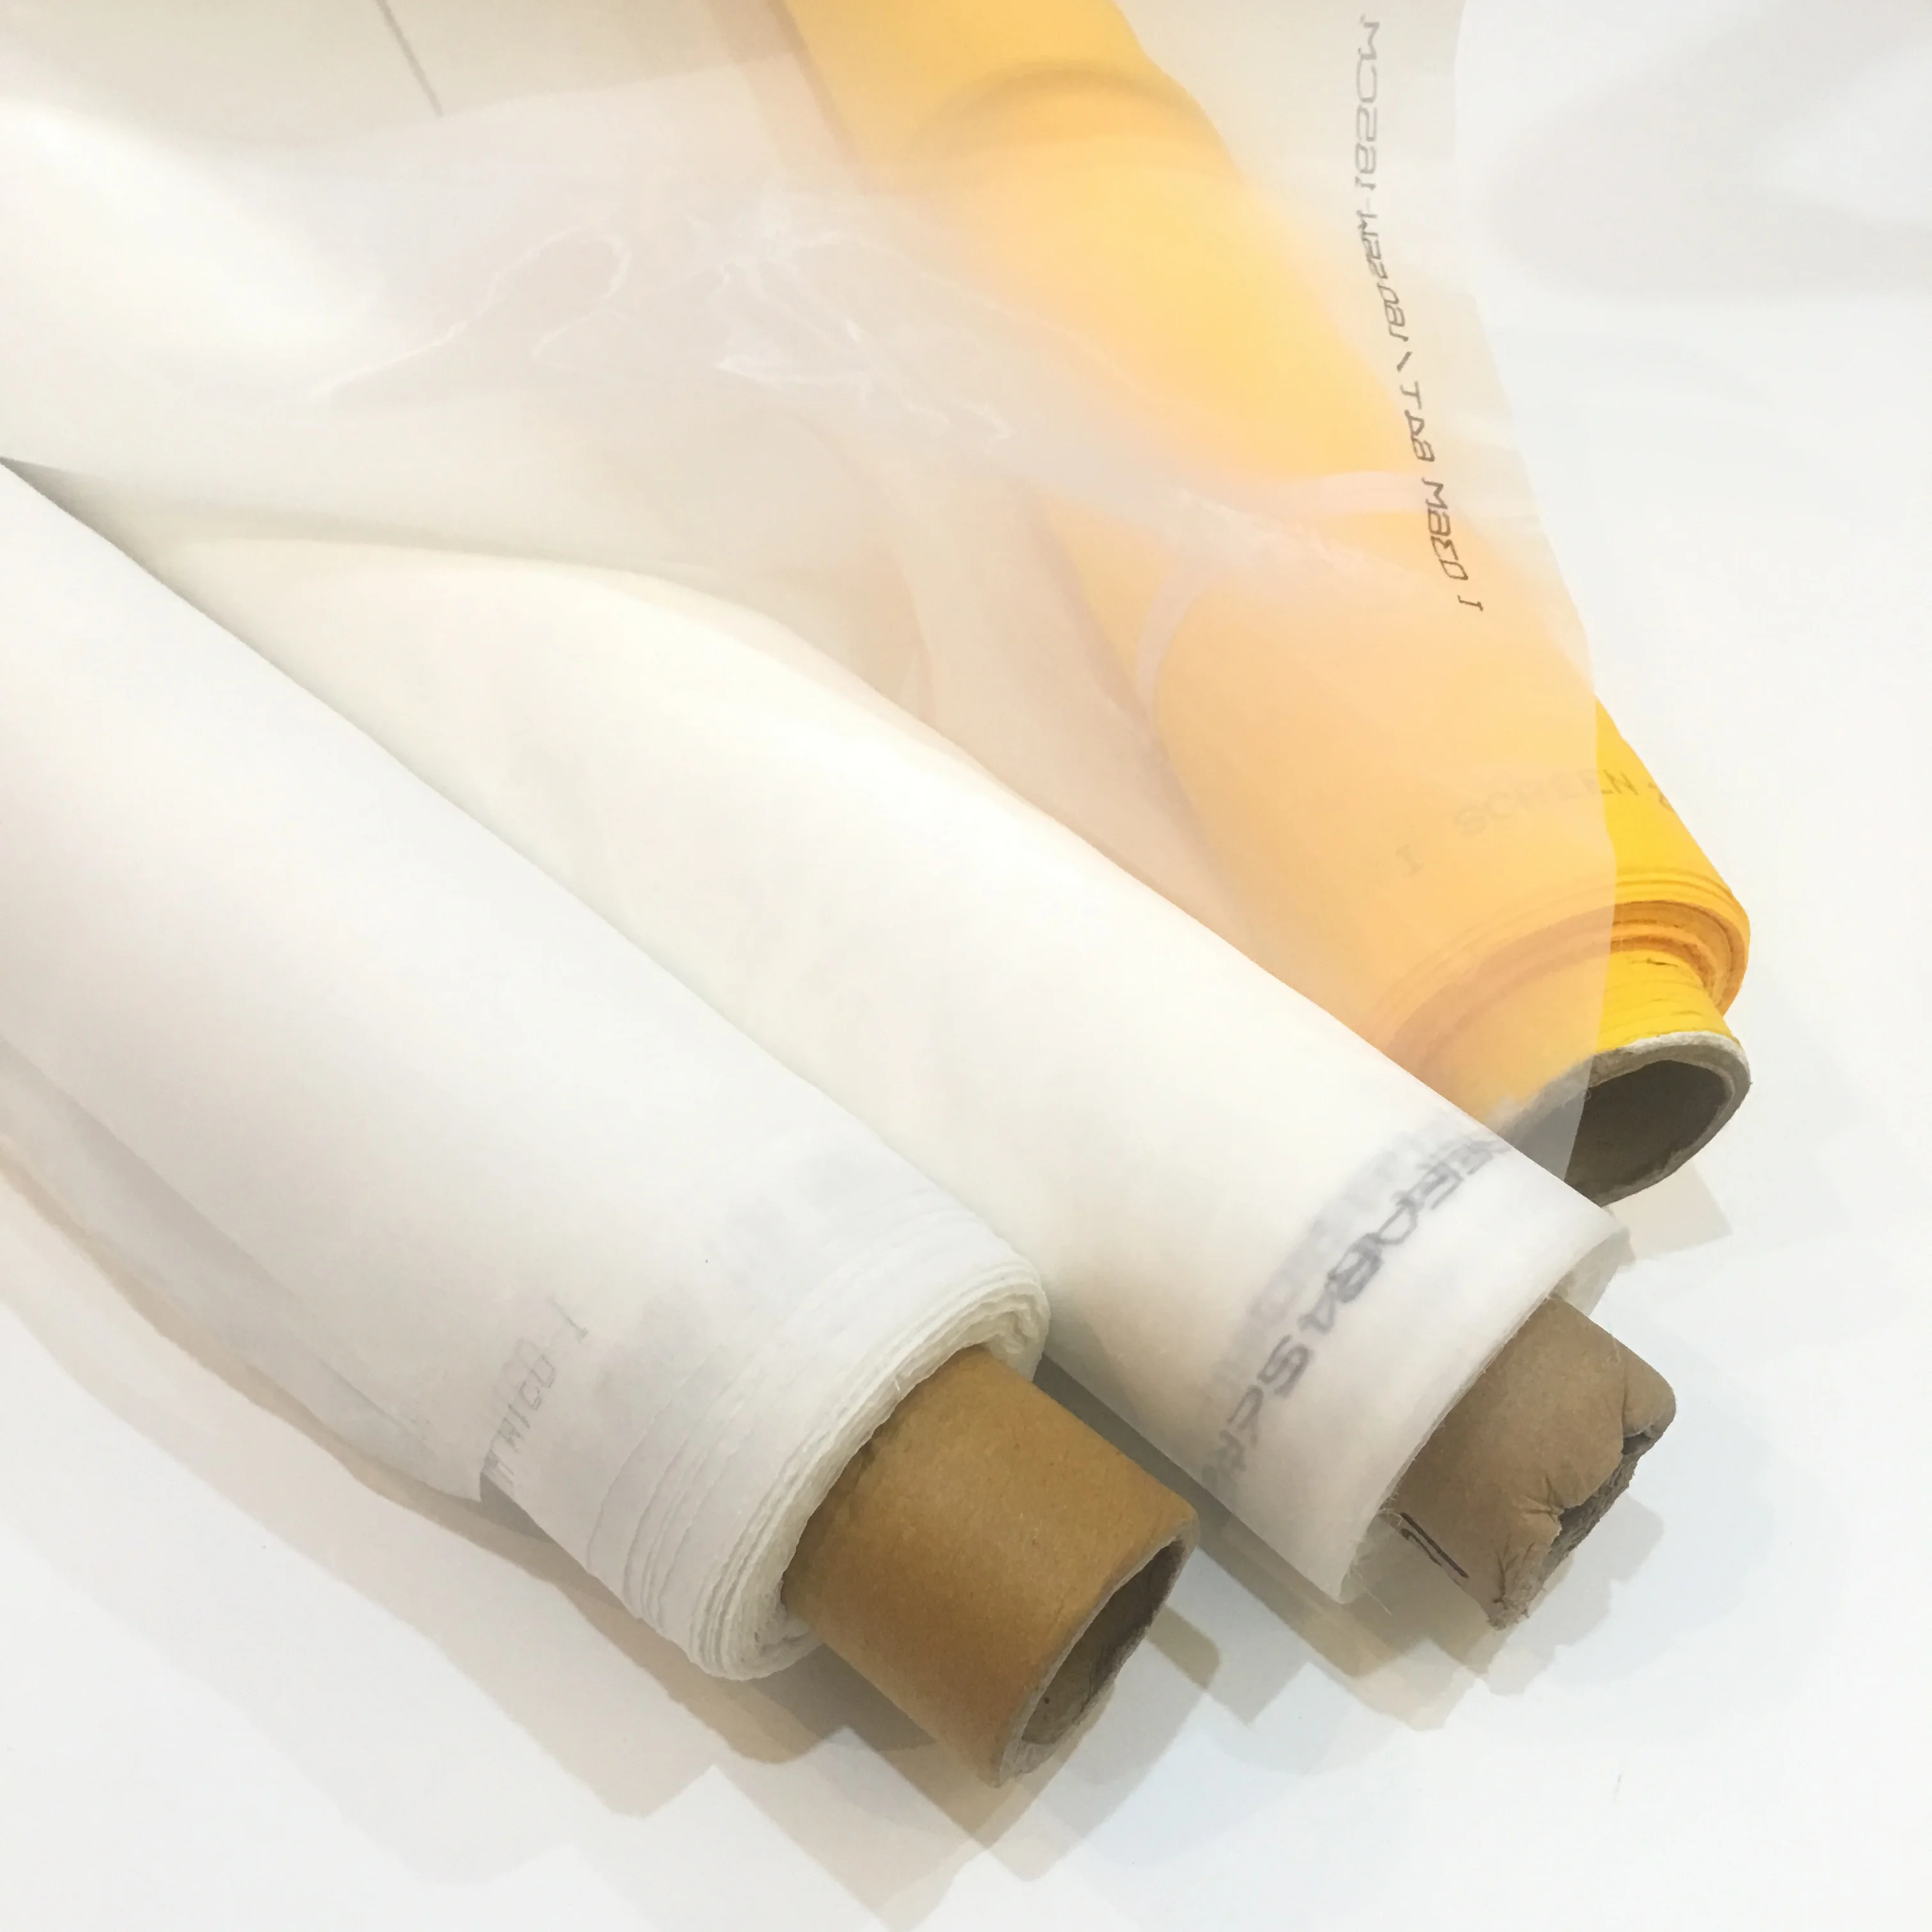 120 см ширина 80-420 м сетка для трафаретной печати 32 T-165 T желто-белый полиэстер шелкография сетка ткань инструменты